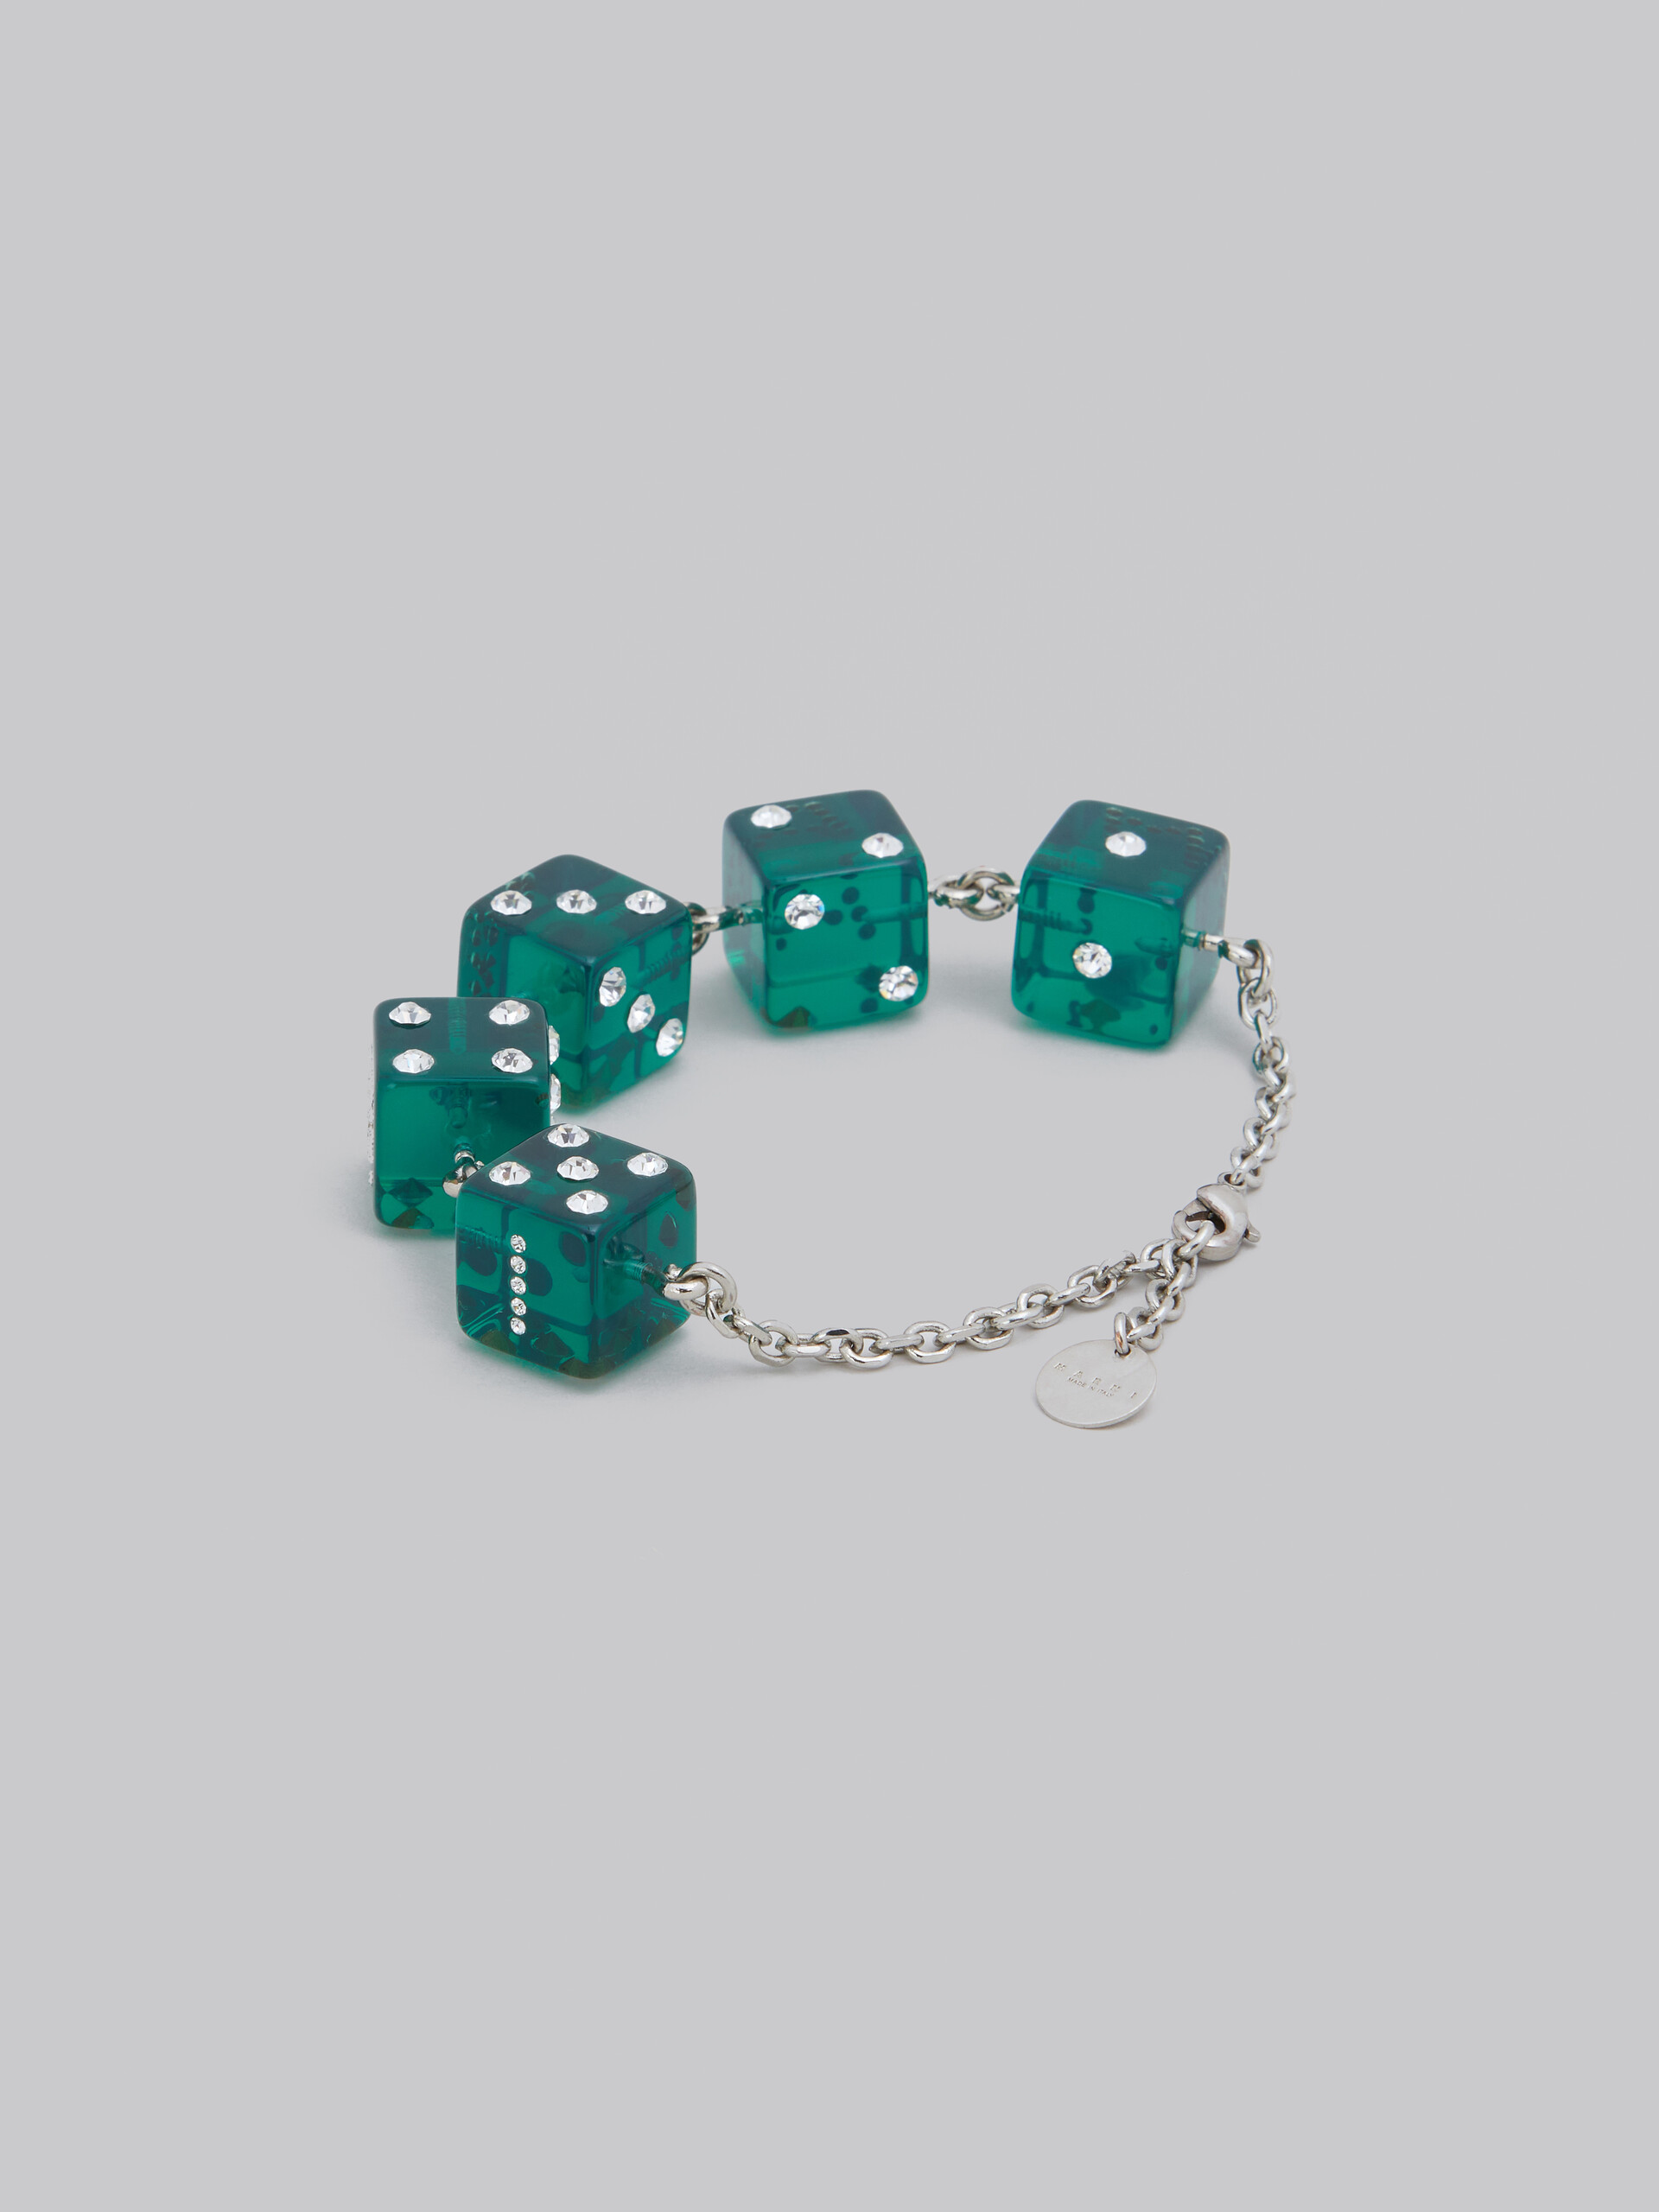 Large rhinestone dice charm bracelet - Bracelets - Image 3